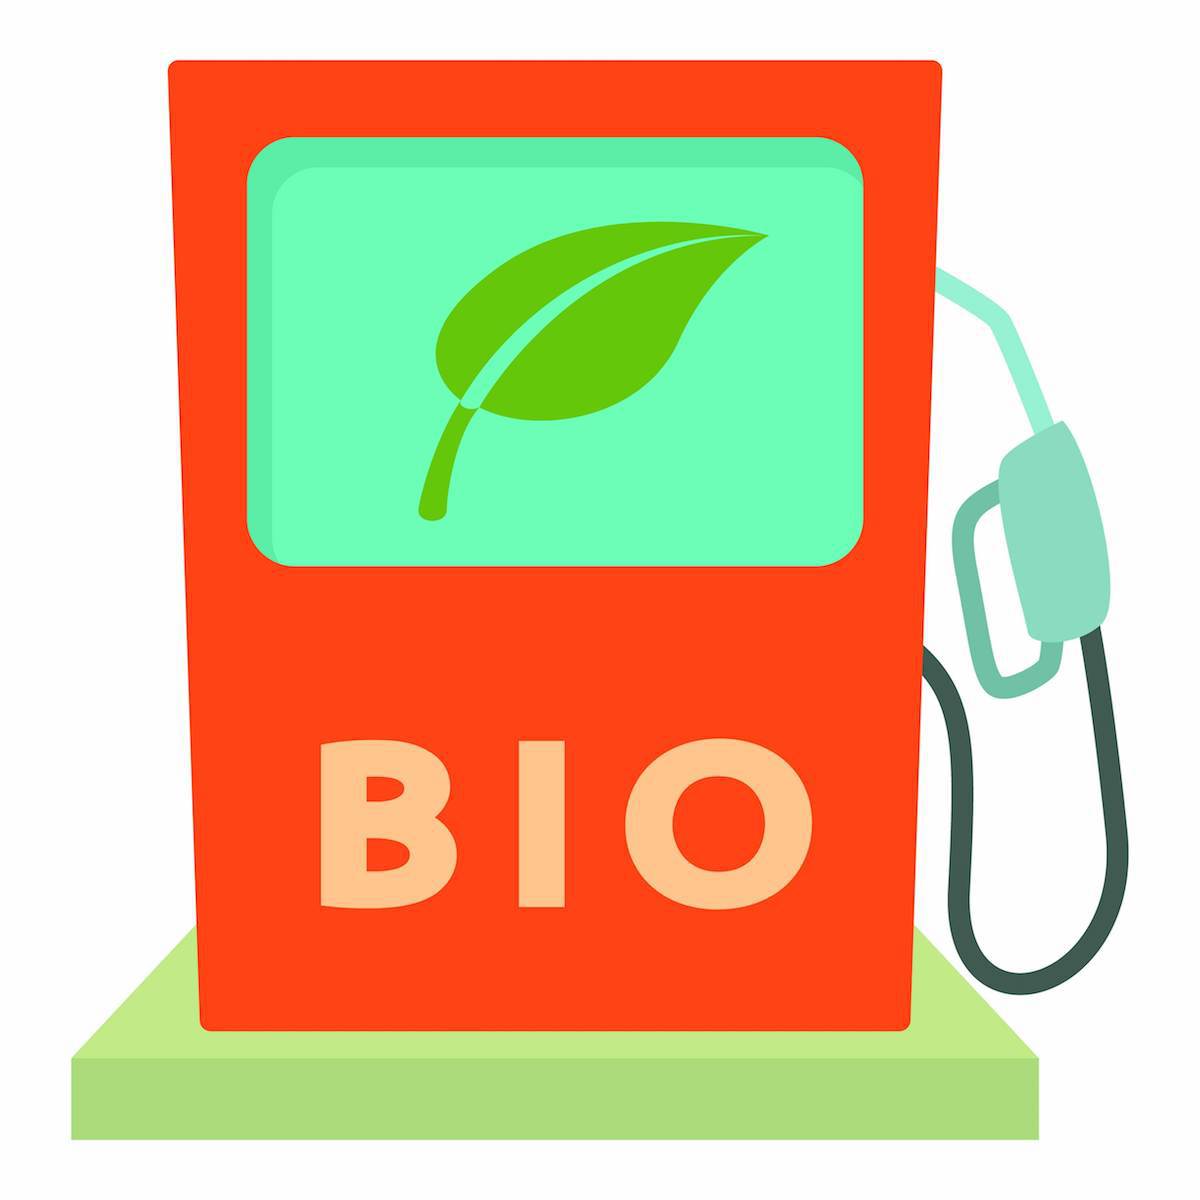 Bio ethanol ©Rvector shutterstock